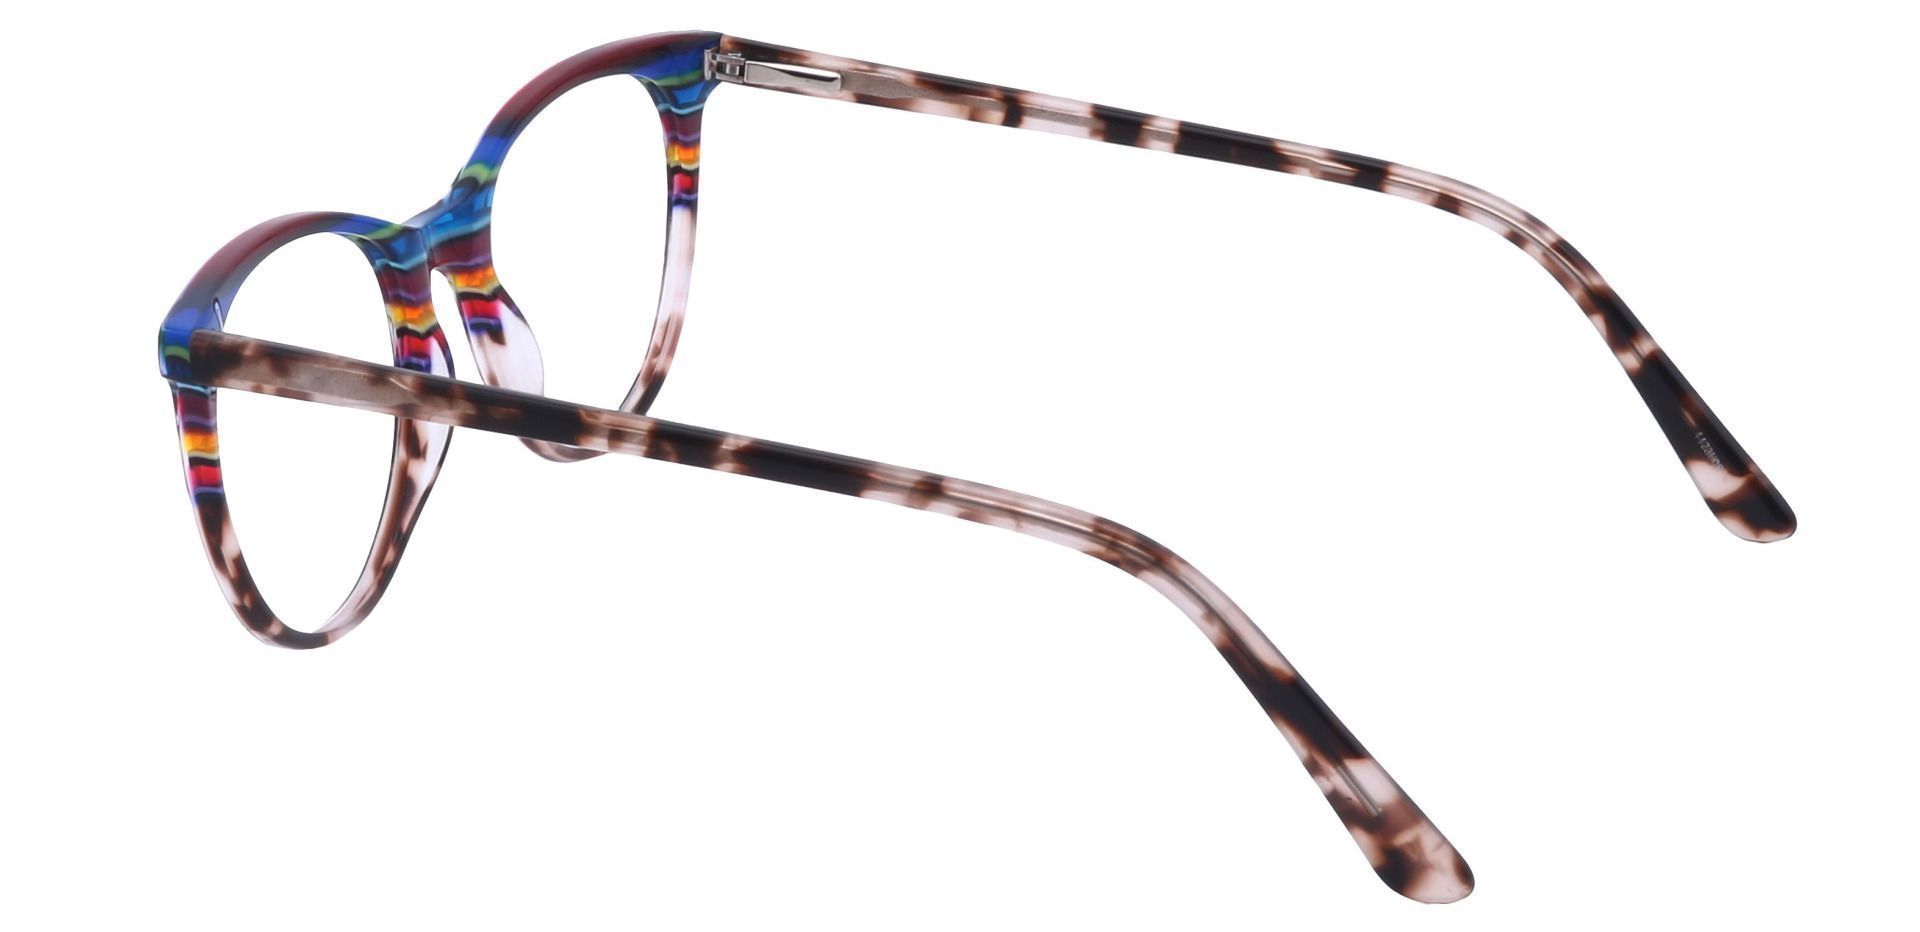 Patagonia Oval Non-Rx Glasses - Multi Colored Stripes